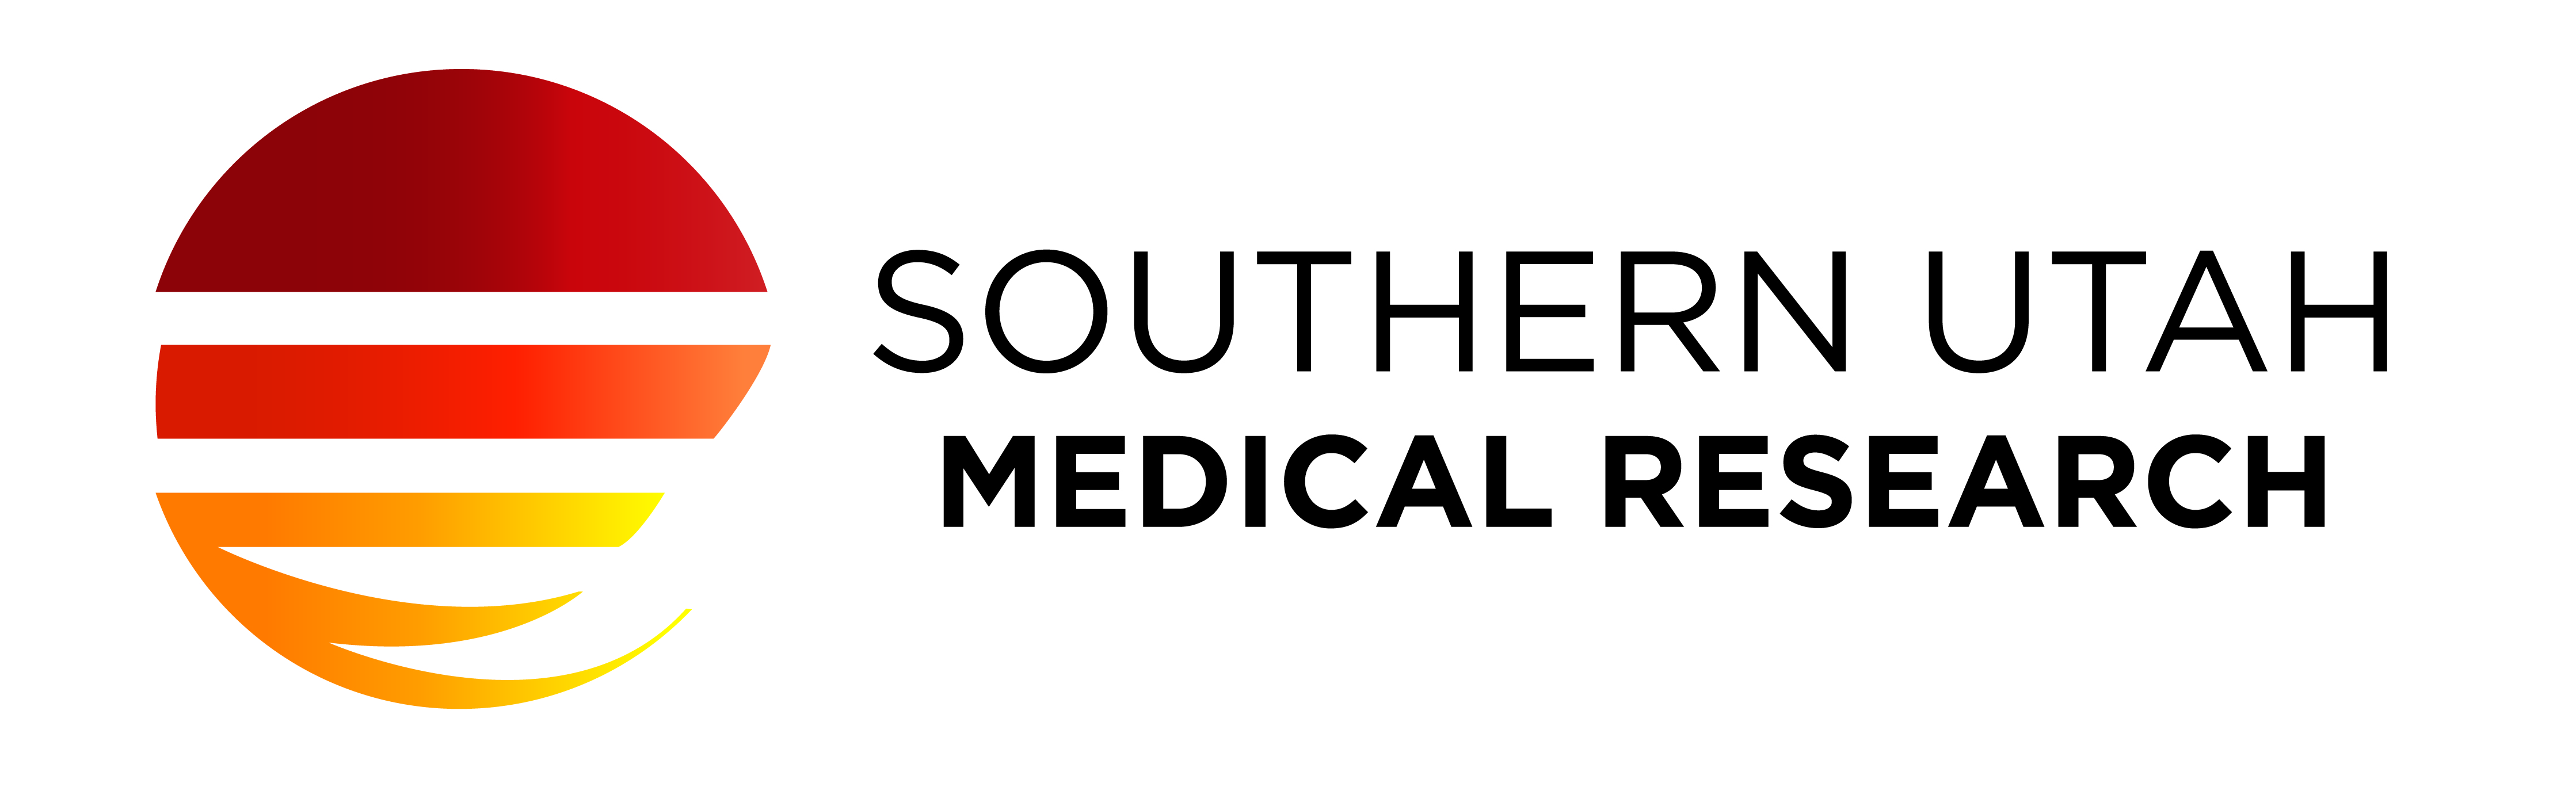 Southern Utah Medical Research, INC